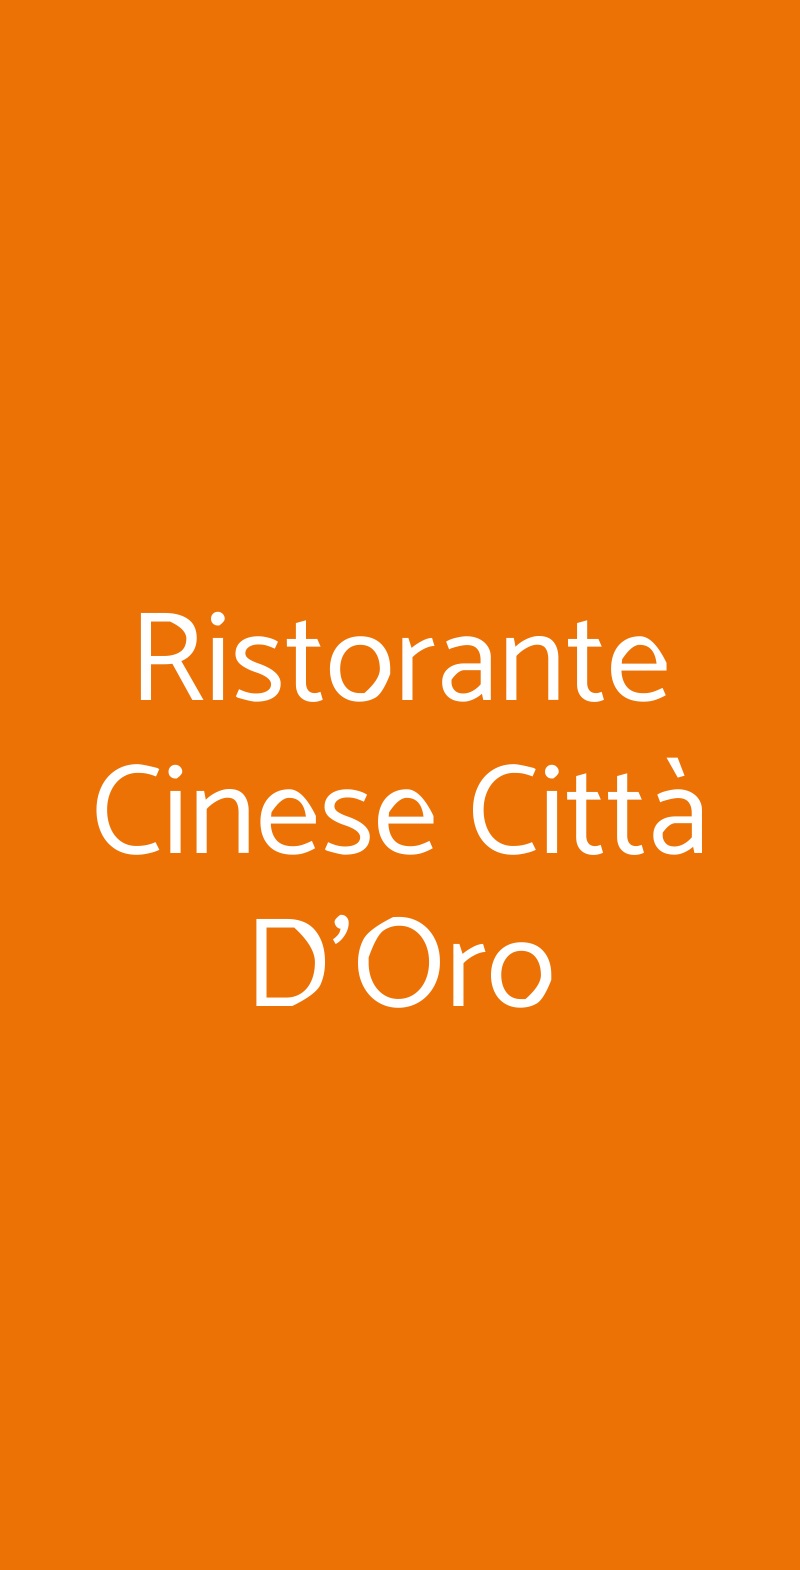 Ristorante Cinese Città D'Oro Bologna menù 1 pagina